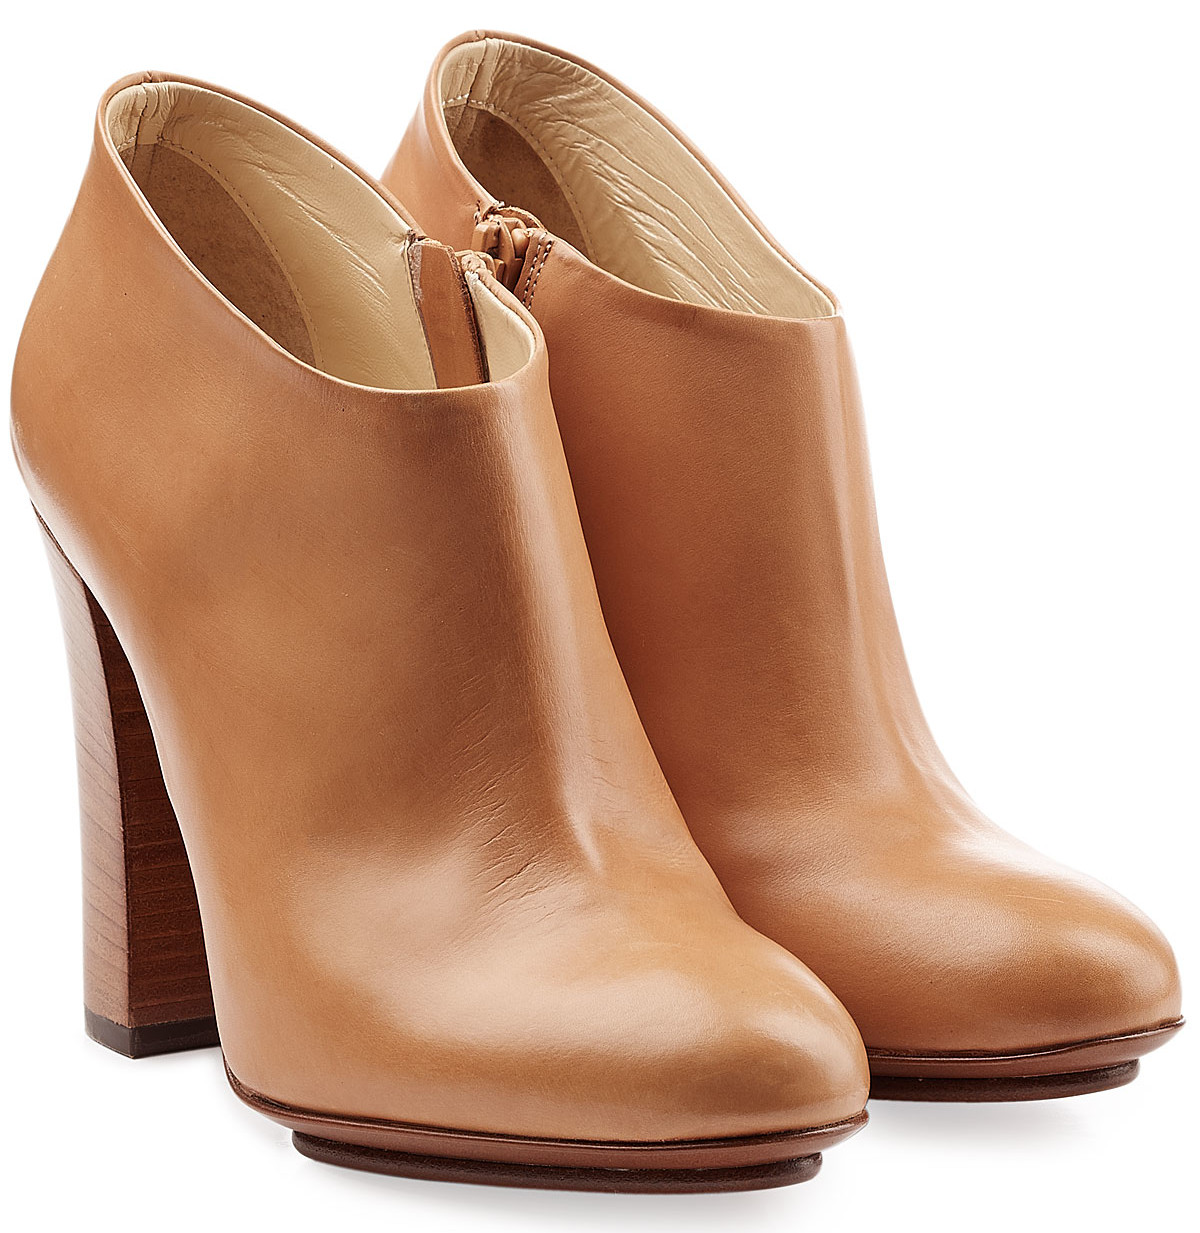 L'AUTRE CHOSE caramel Leather Ankle Boots